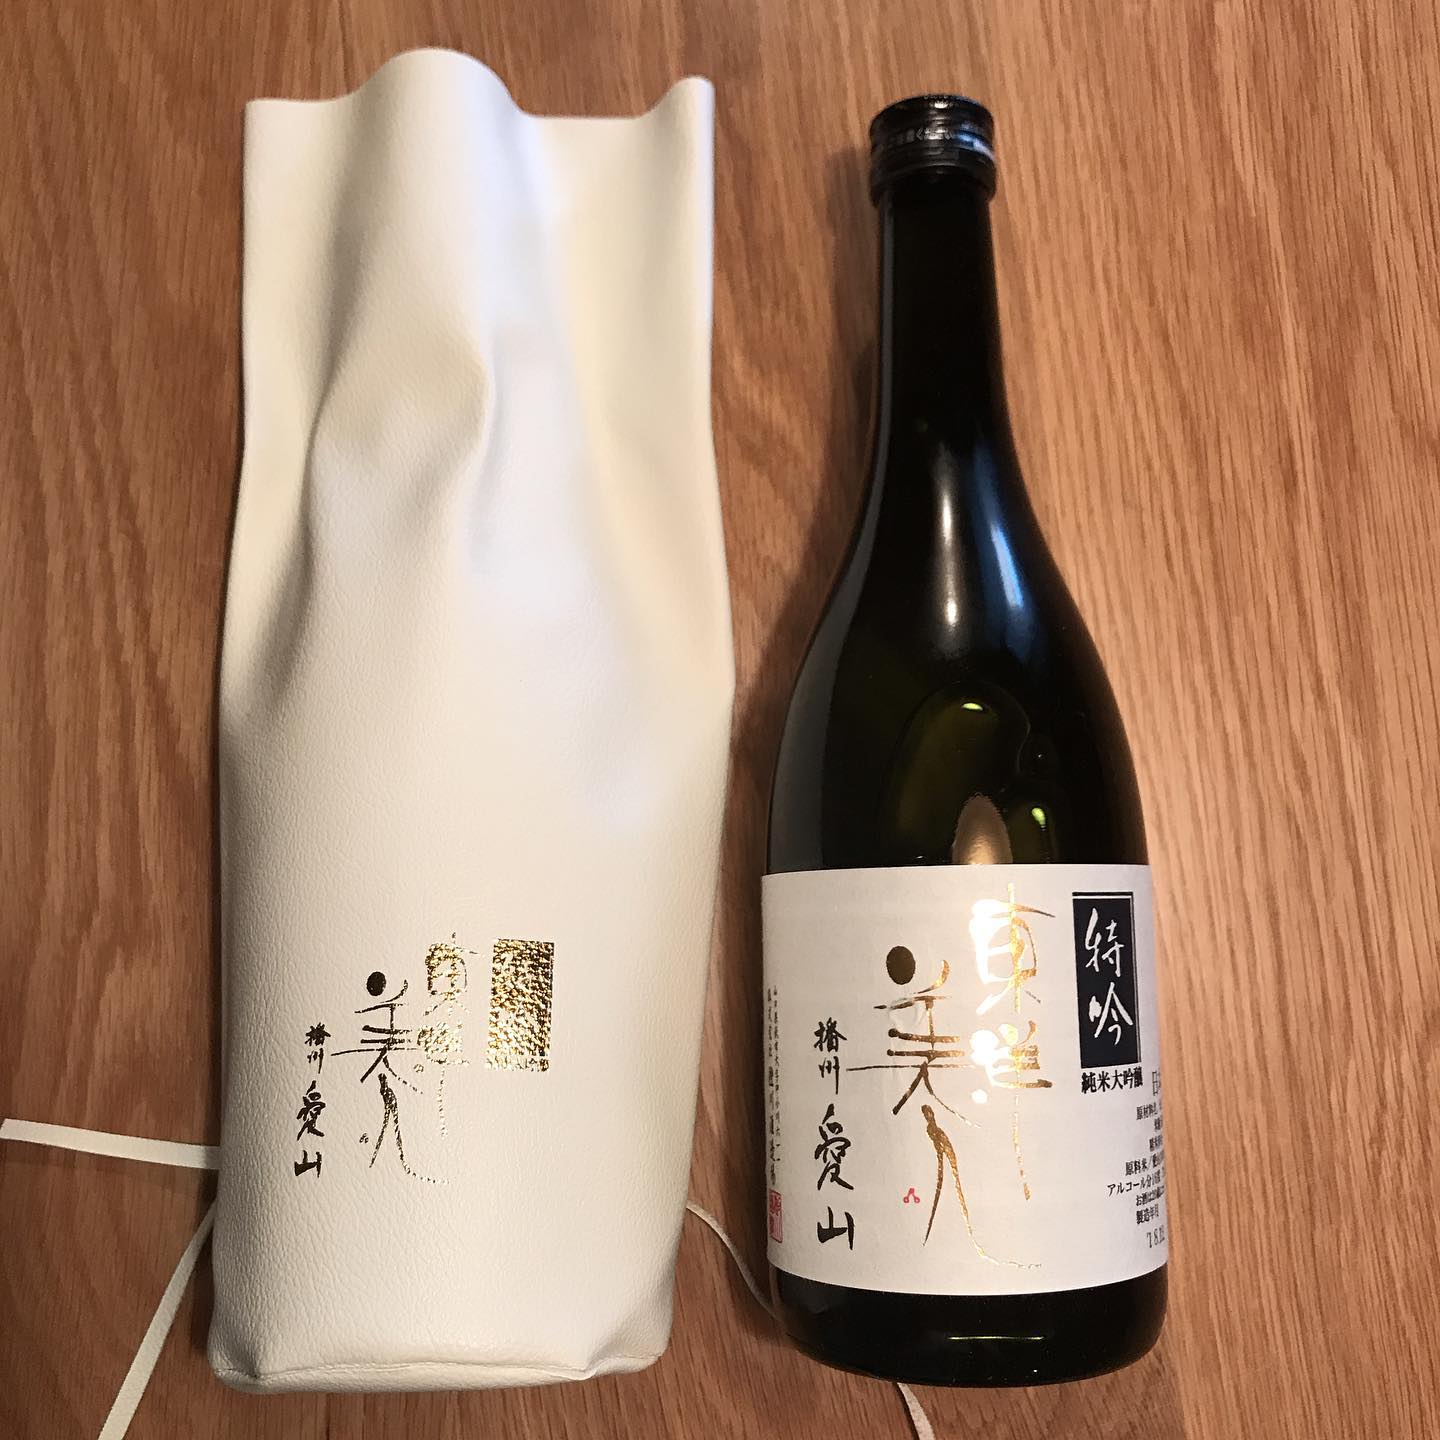 特別な入れ物で包まれてる、特別なお酒。東洋美人の純米大吟醸「播州 愛山」ラディコングラスでどうぞ#グラス日本酒#イルフェソワフ#炭とワインと日本酒